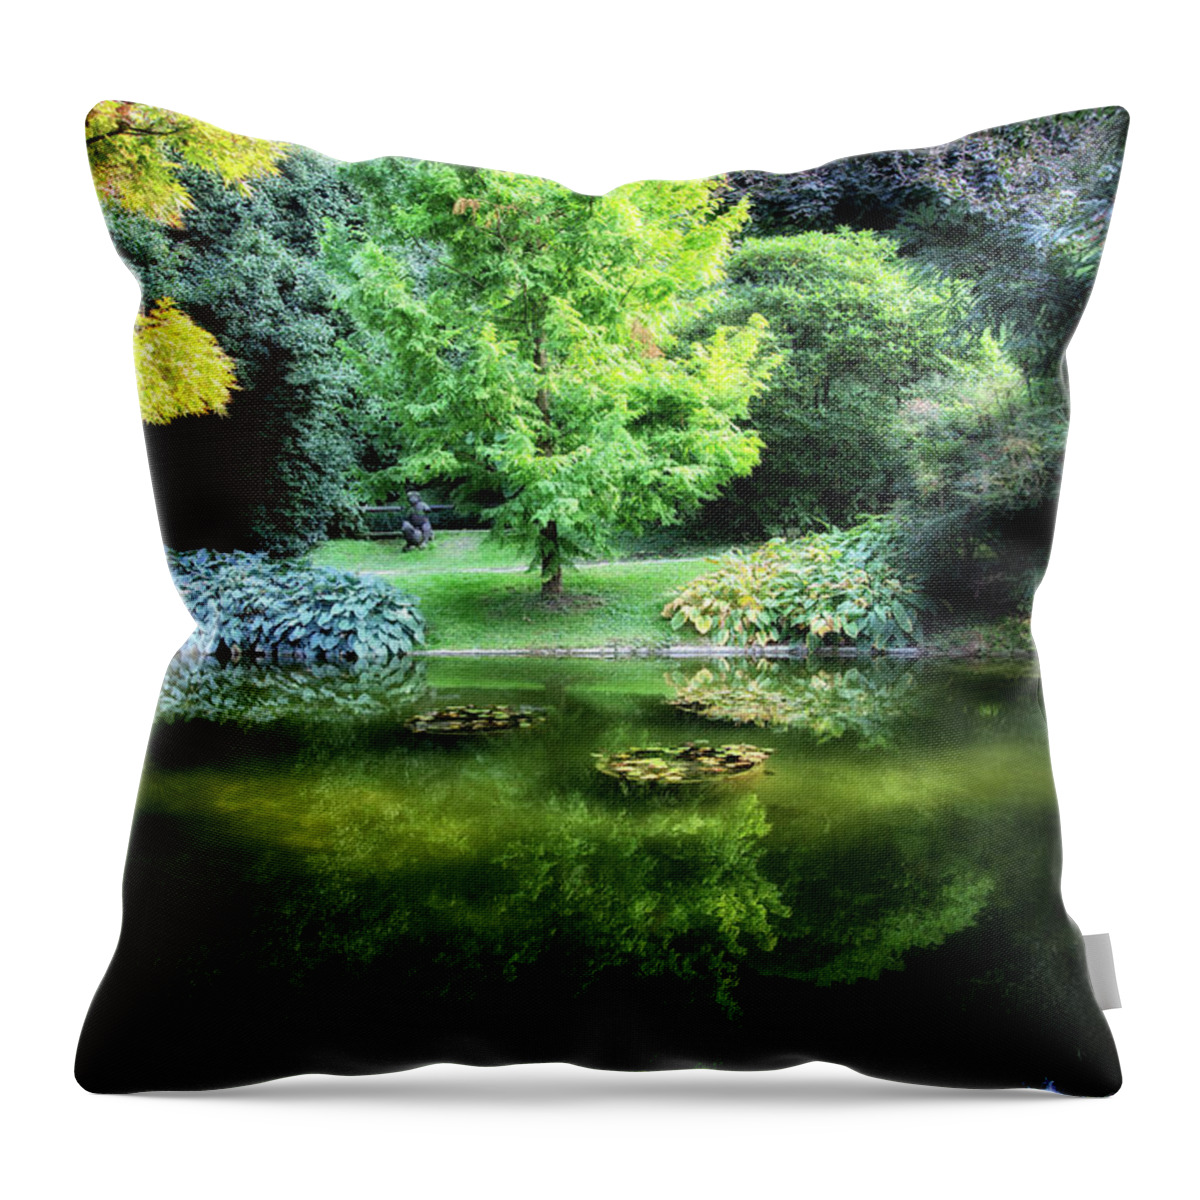 Garden Throw Pillow featuring the photograph Secret Garden by Raf Winterpacht